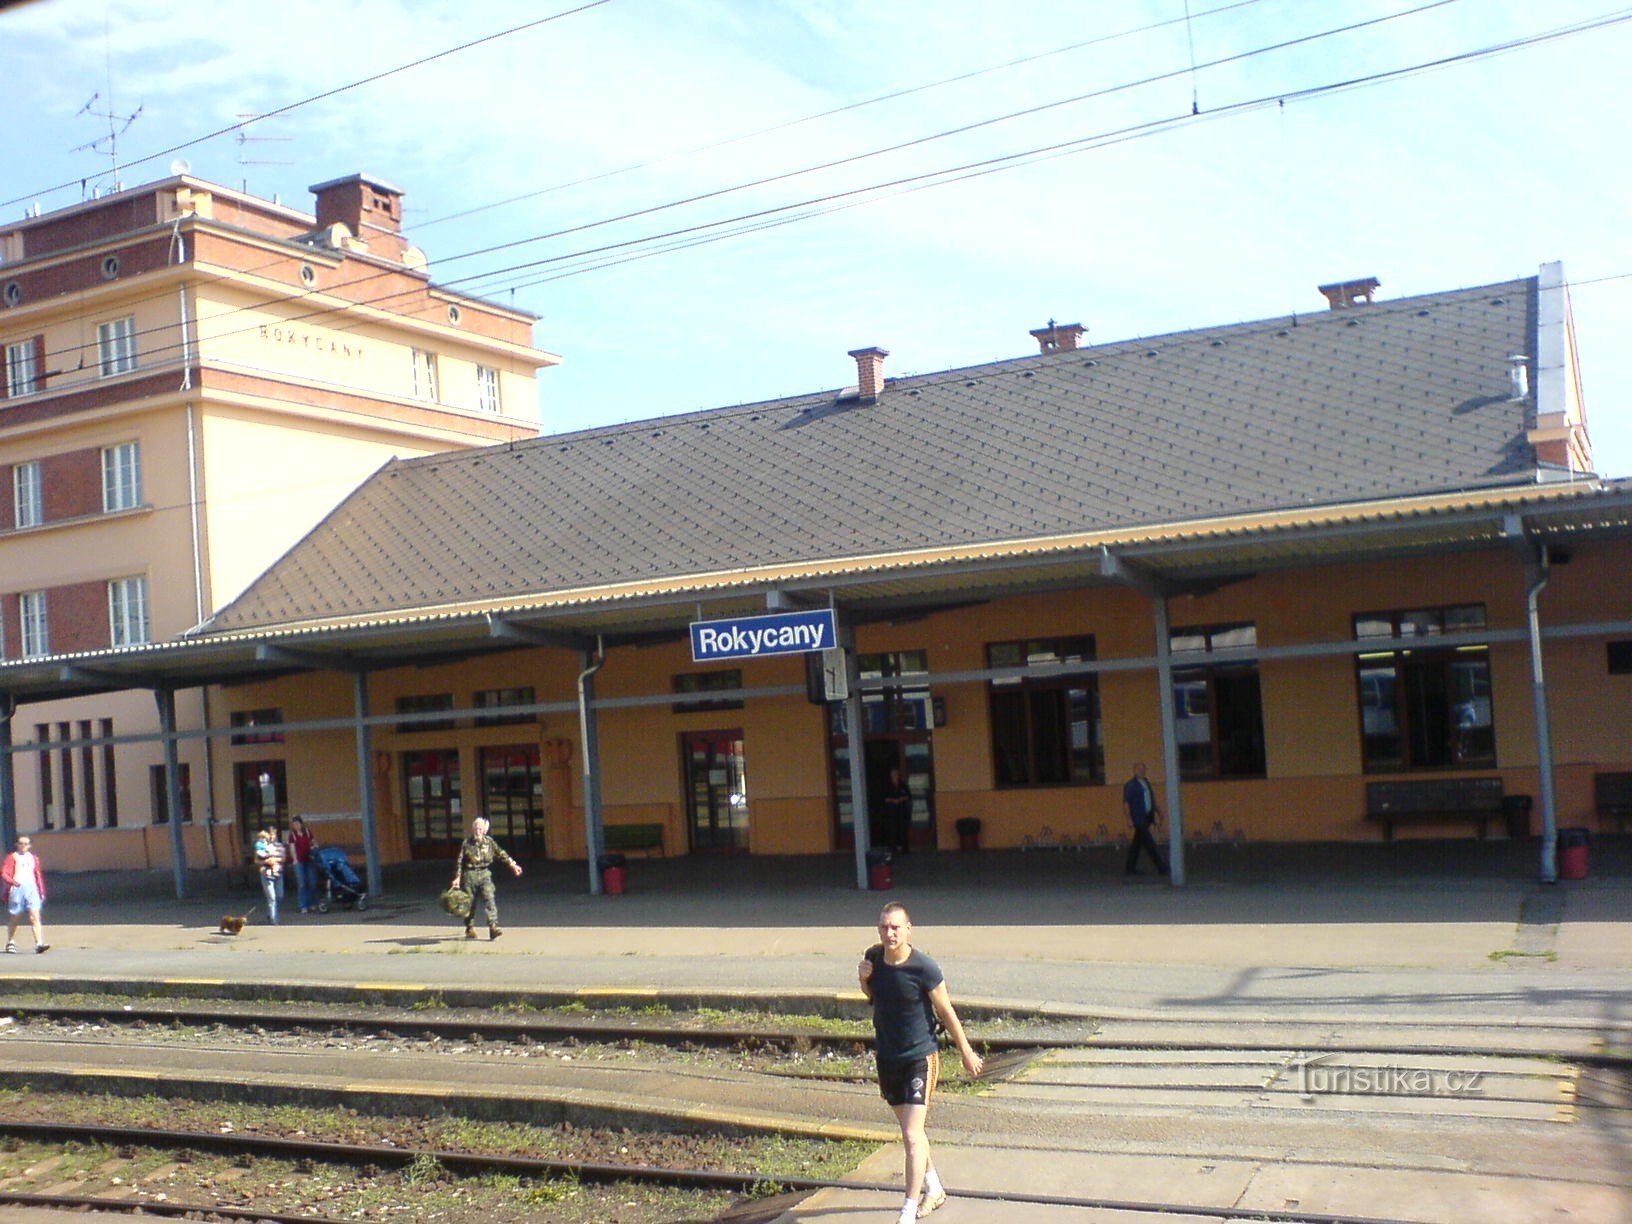 Predgrađe Rokycany - željeznička stanica